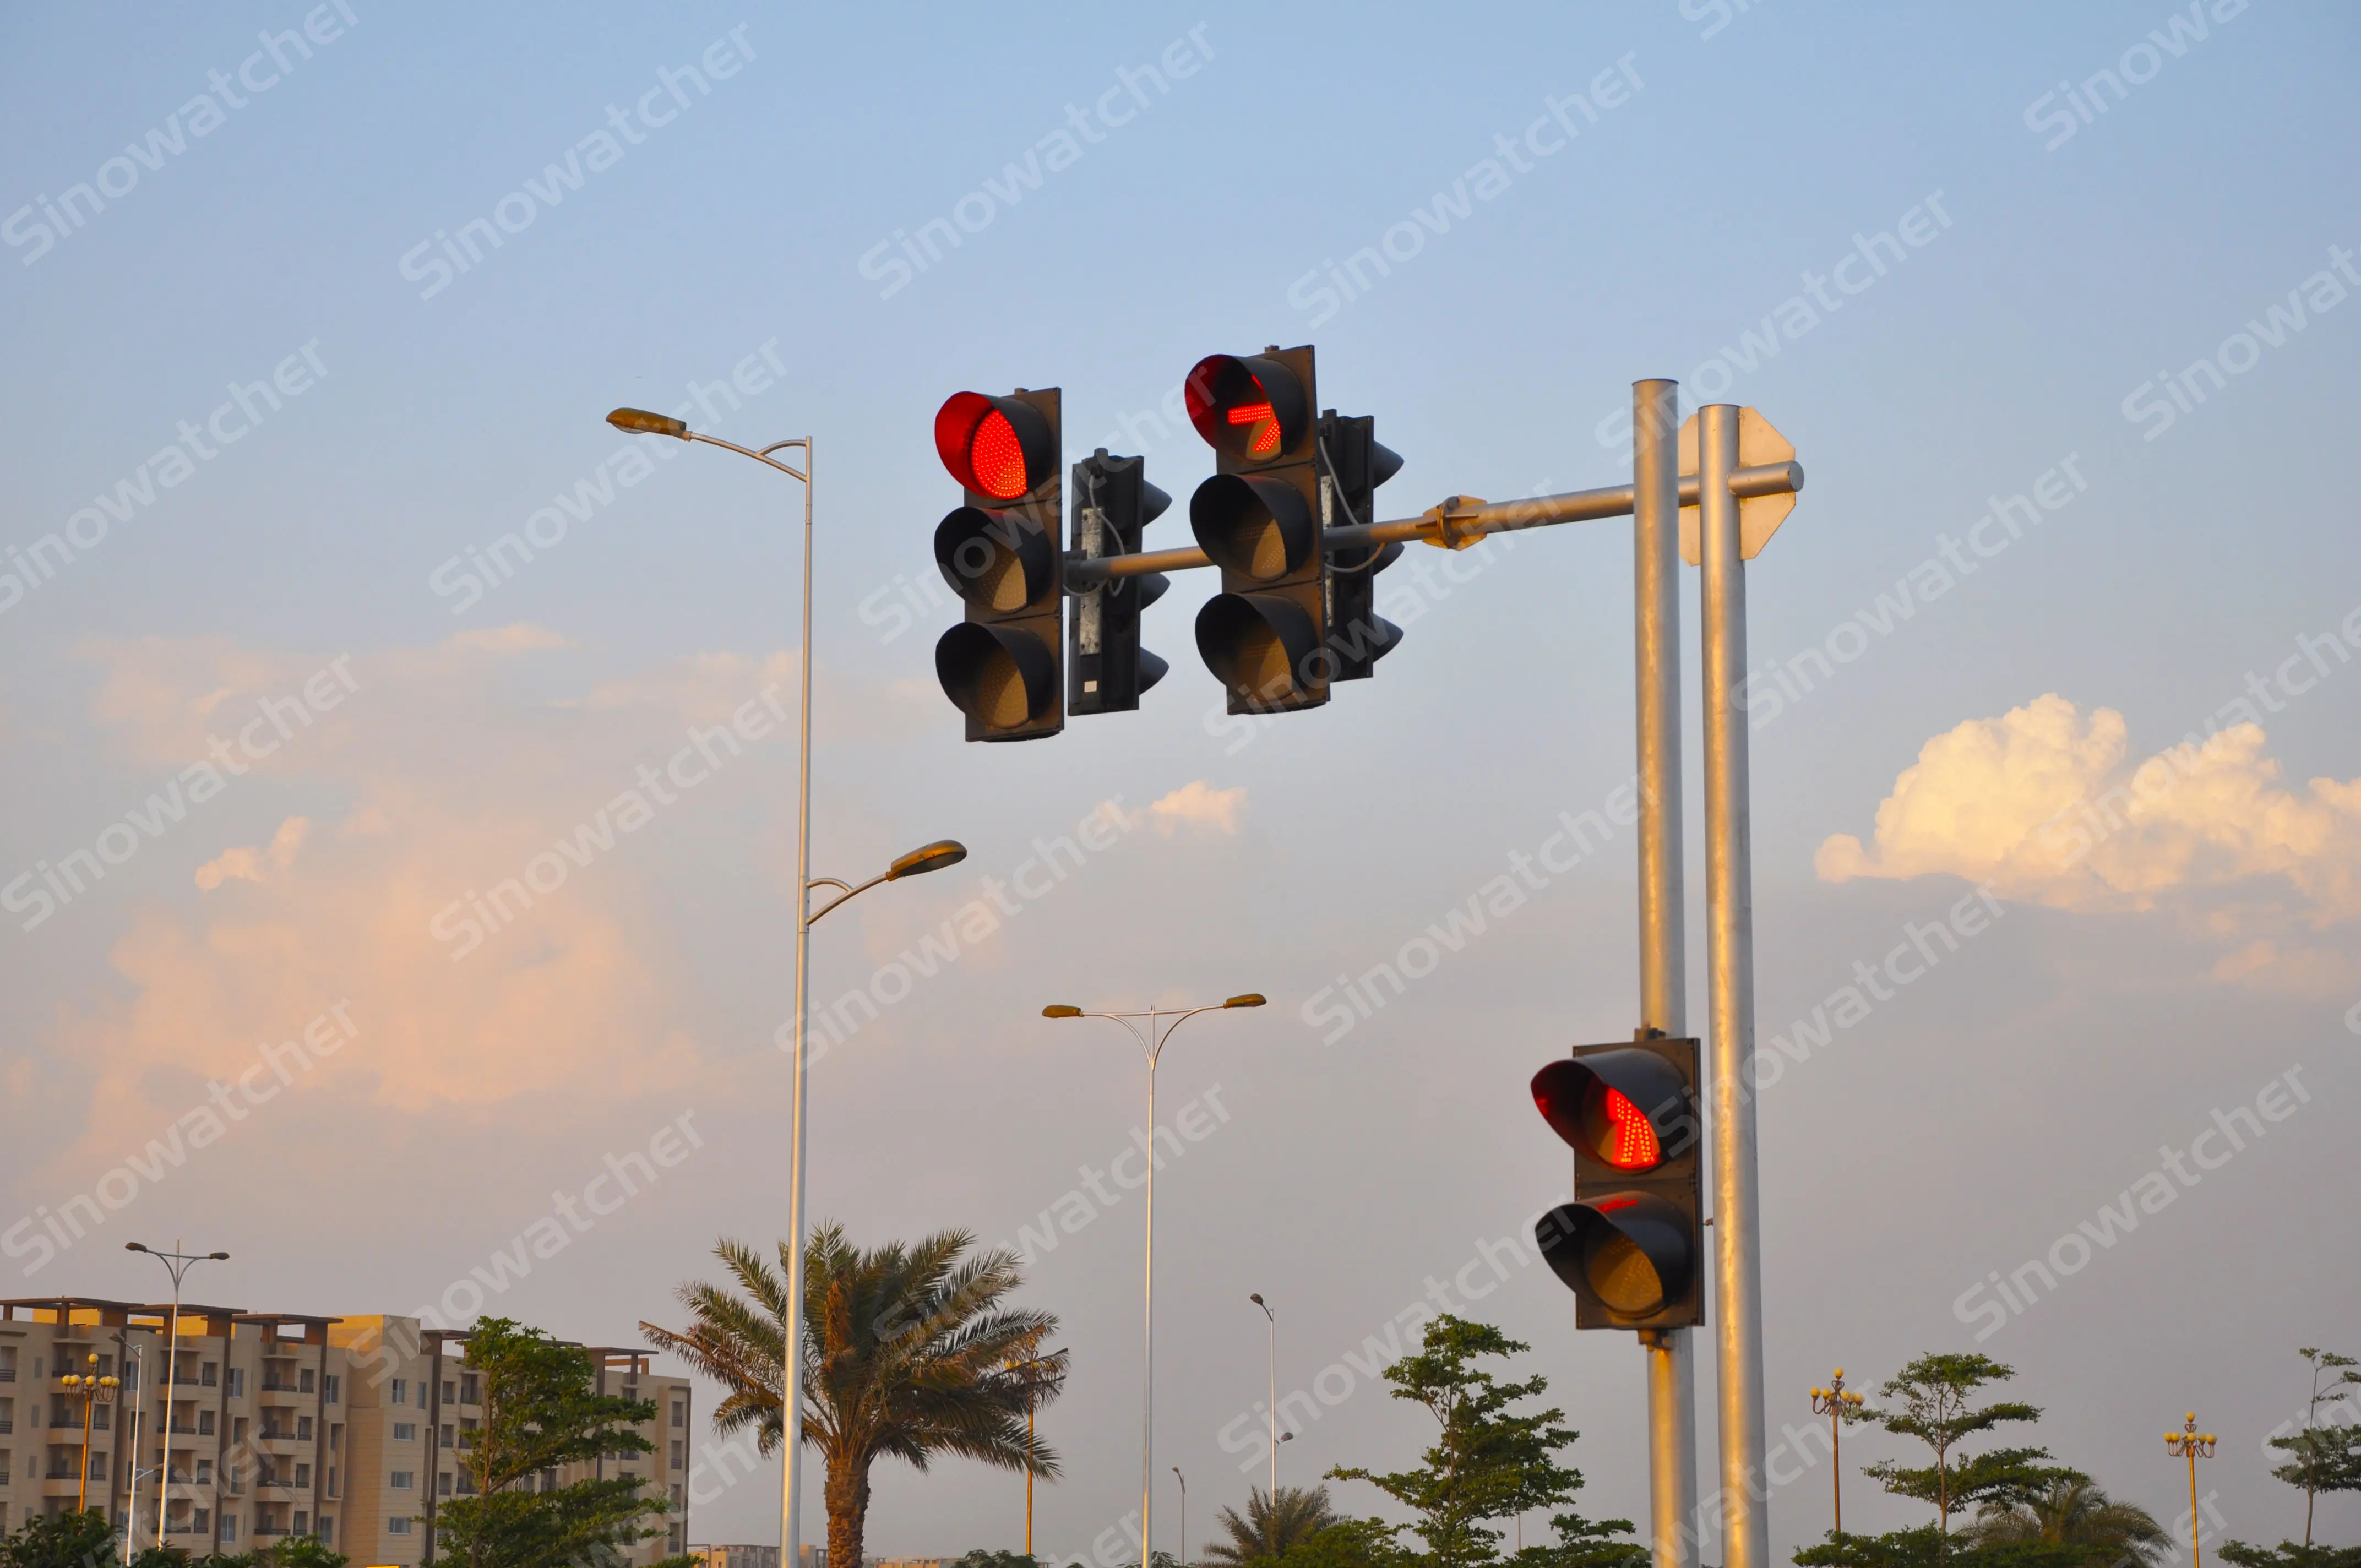 LED traffic signals